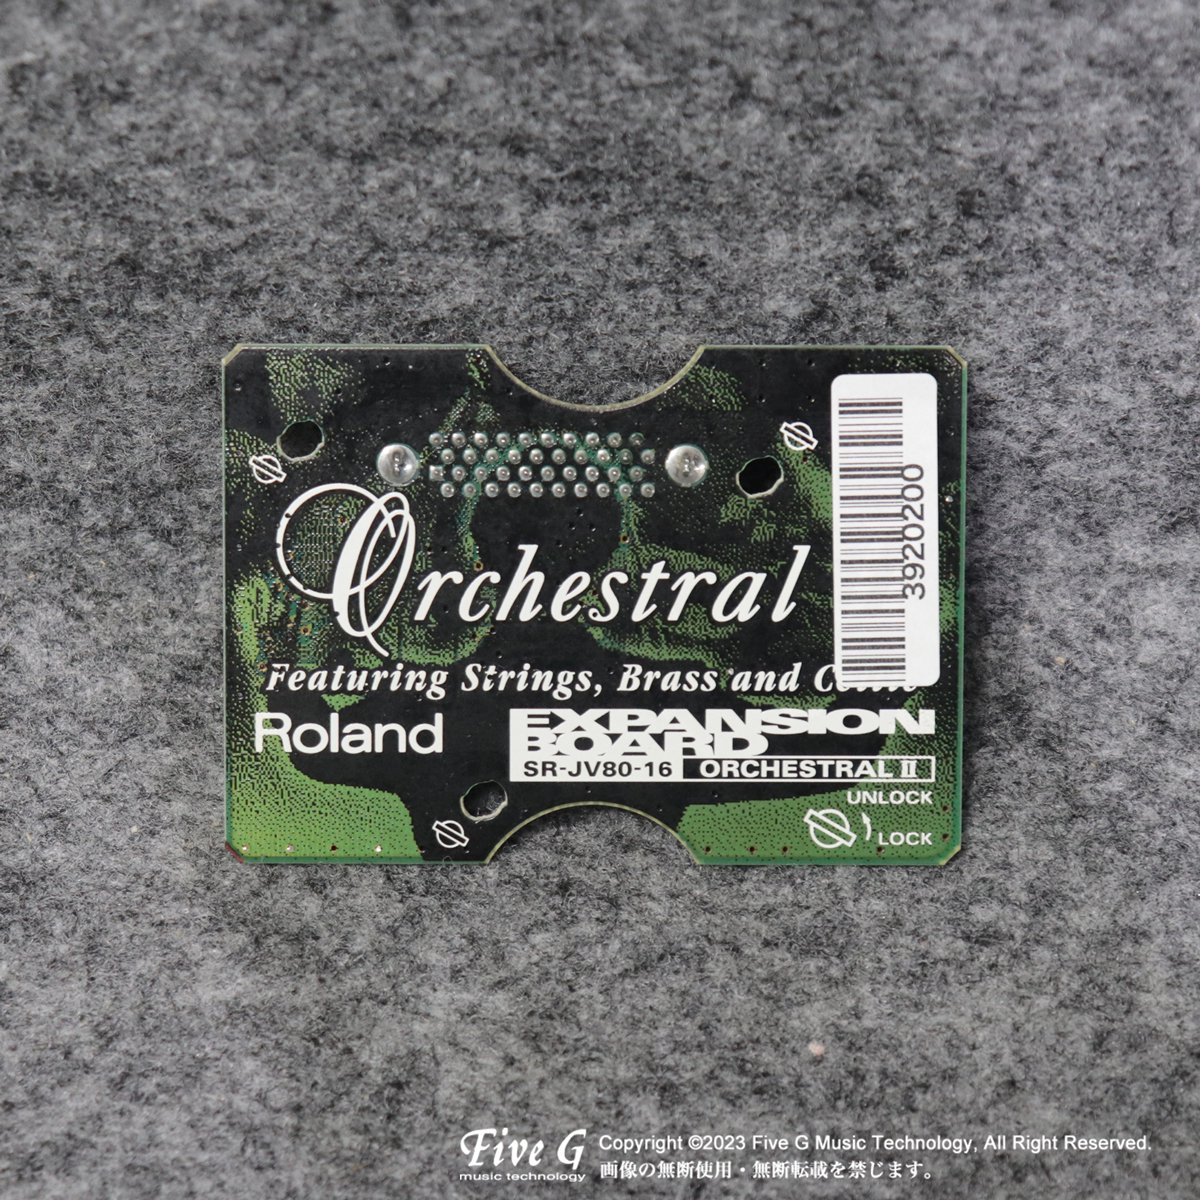 Roland | SR-JV80-16 | 中古 - Used - サウンド拡張カード | Five G